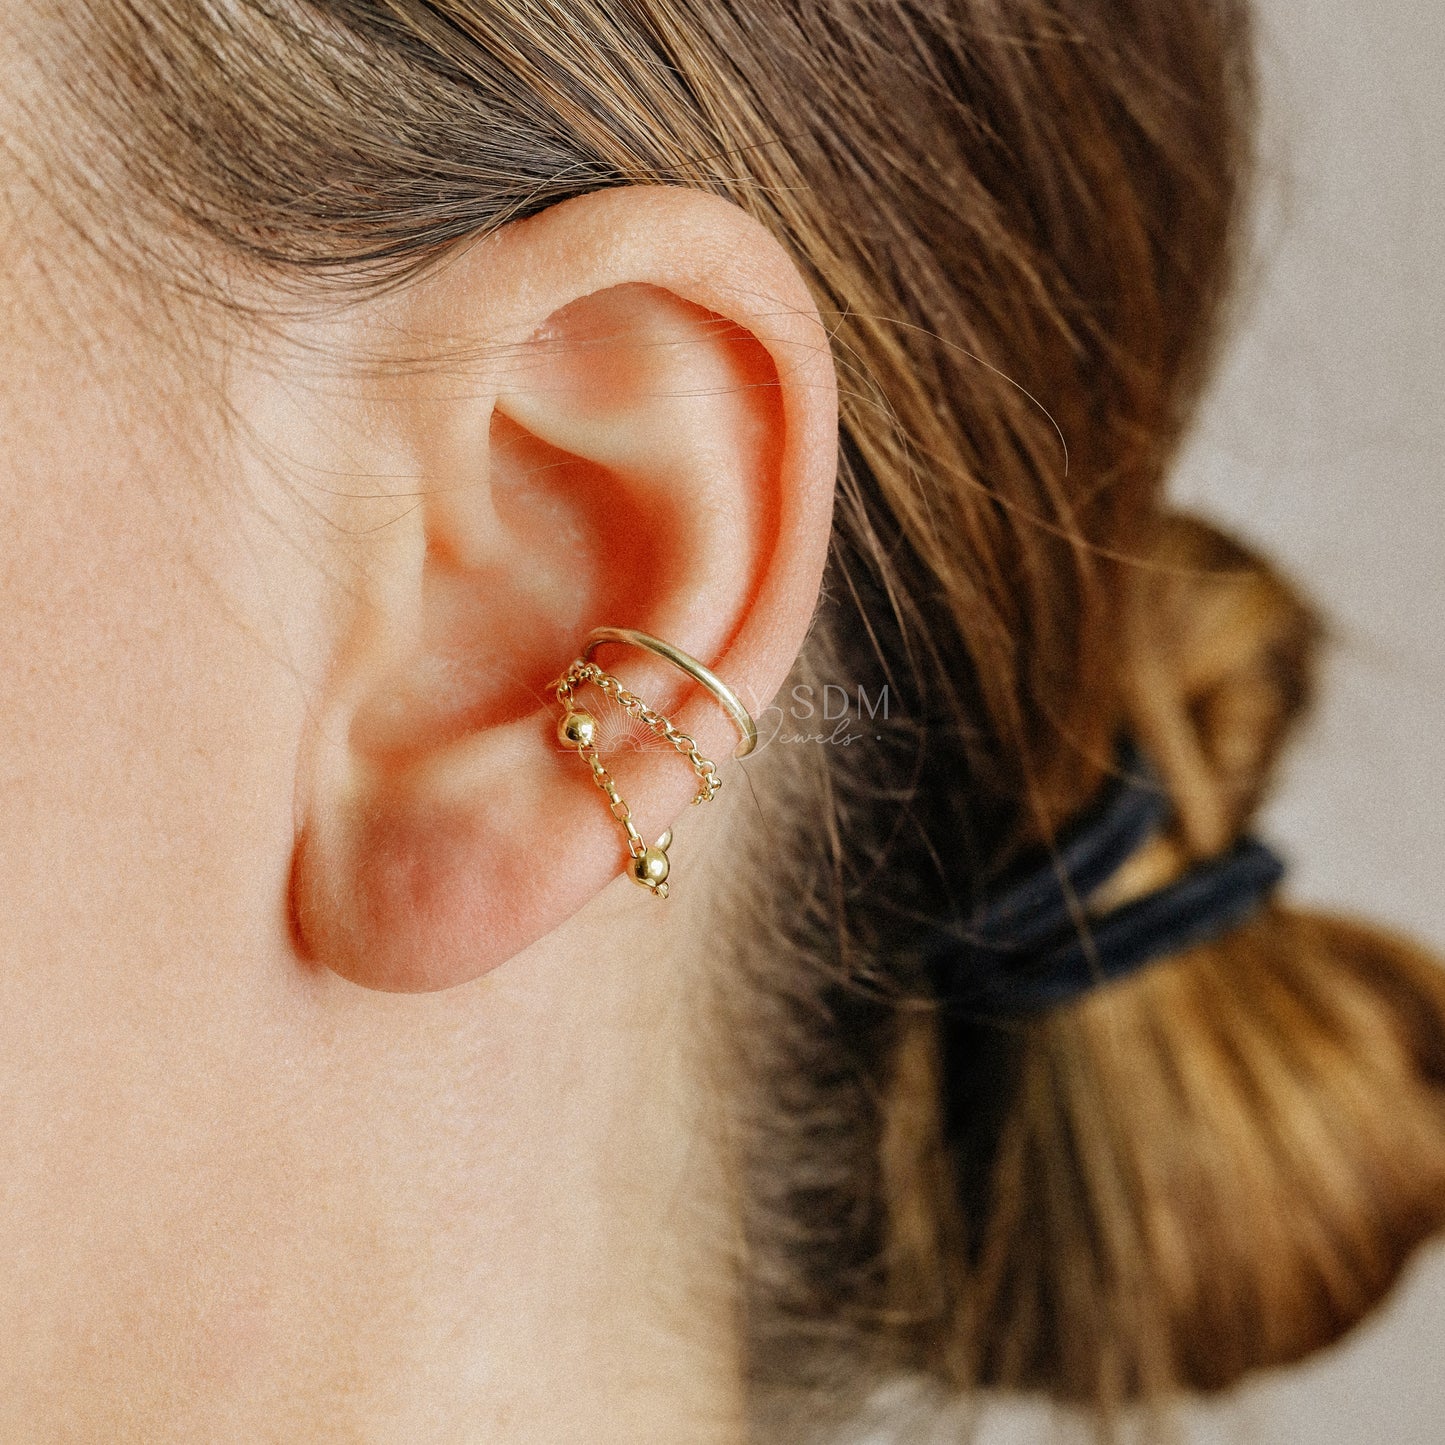 Minimalist Ear Cuff • Gold Ear Cuff • No Piercing One Band And Double Chain Ear Cuff • Ear Cuff No Pierced • BYSDMJEWELS